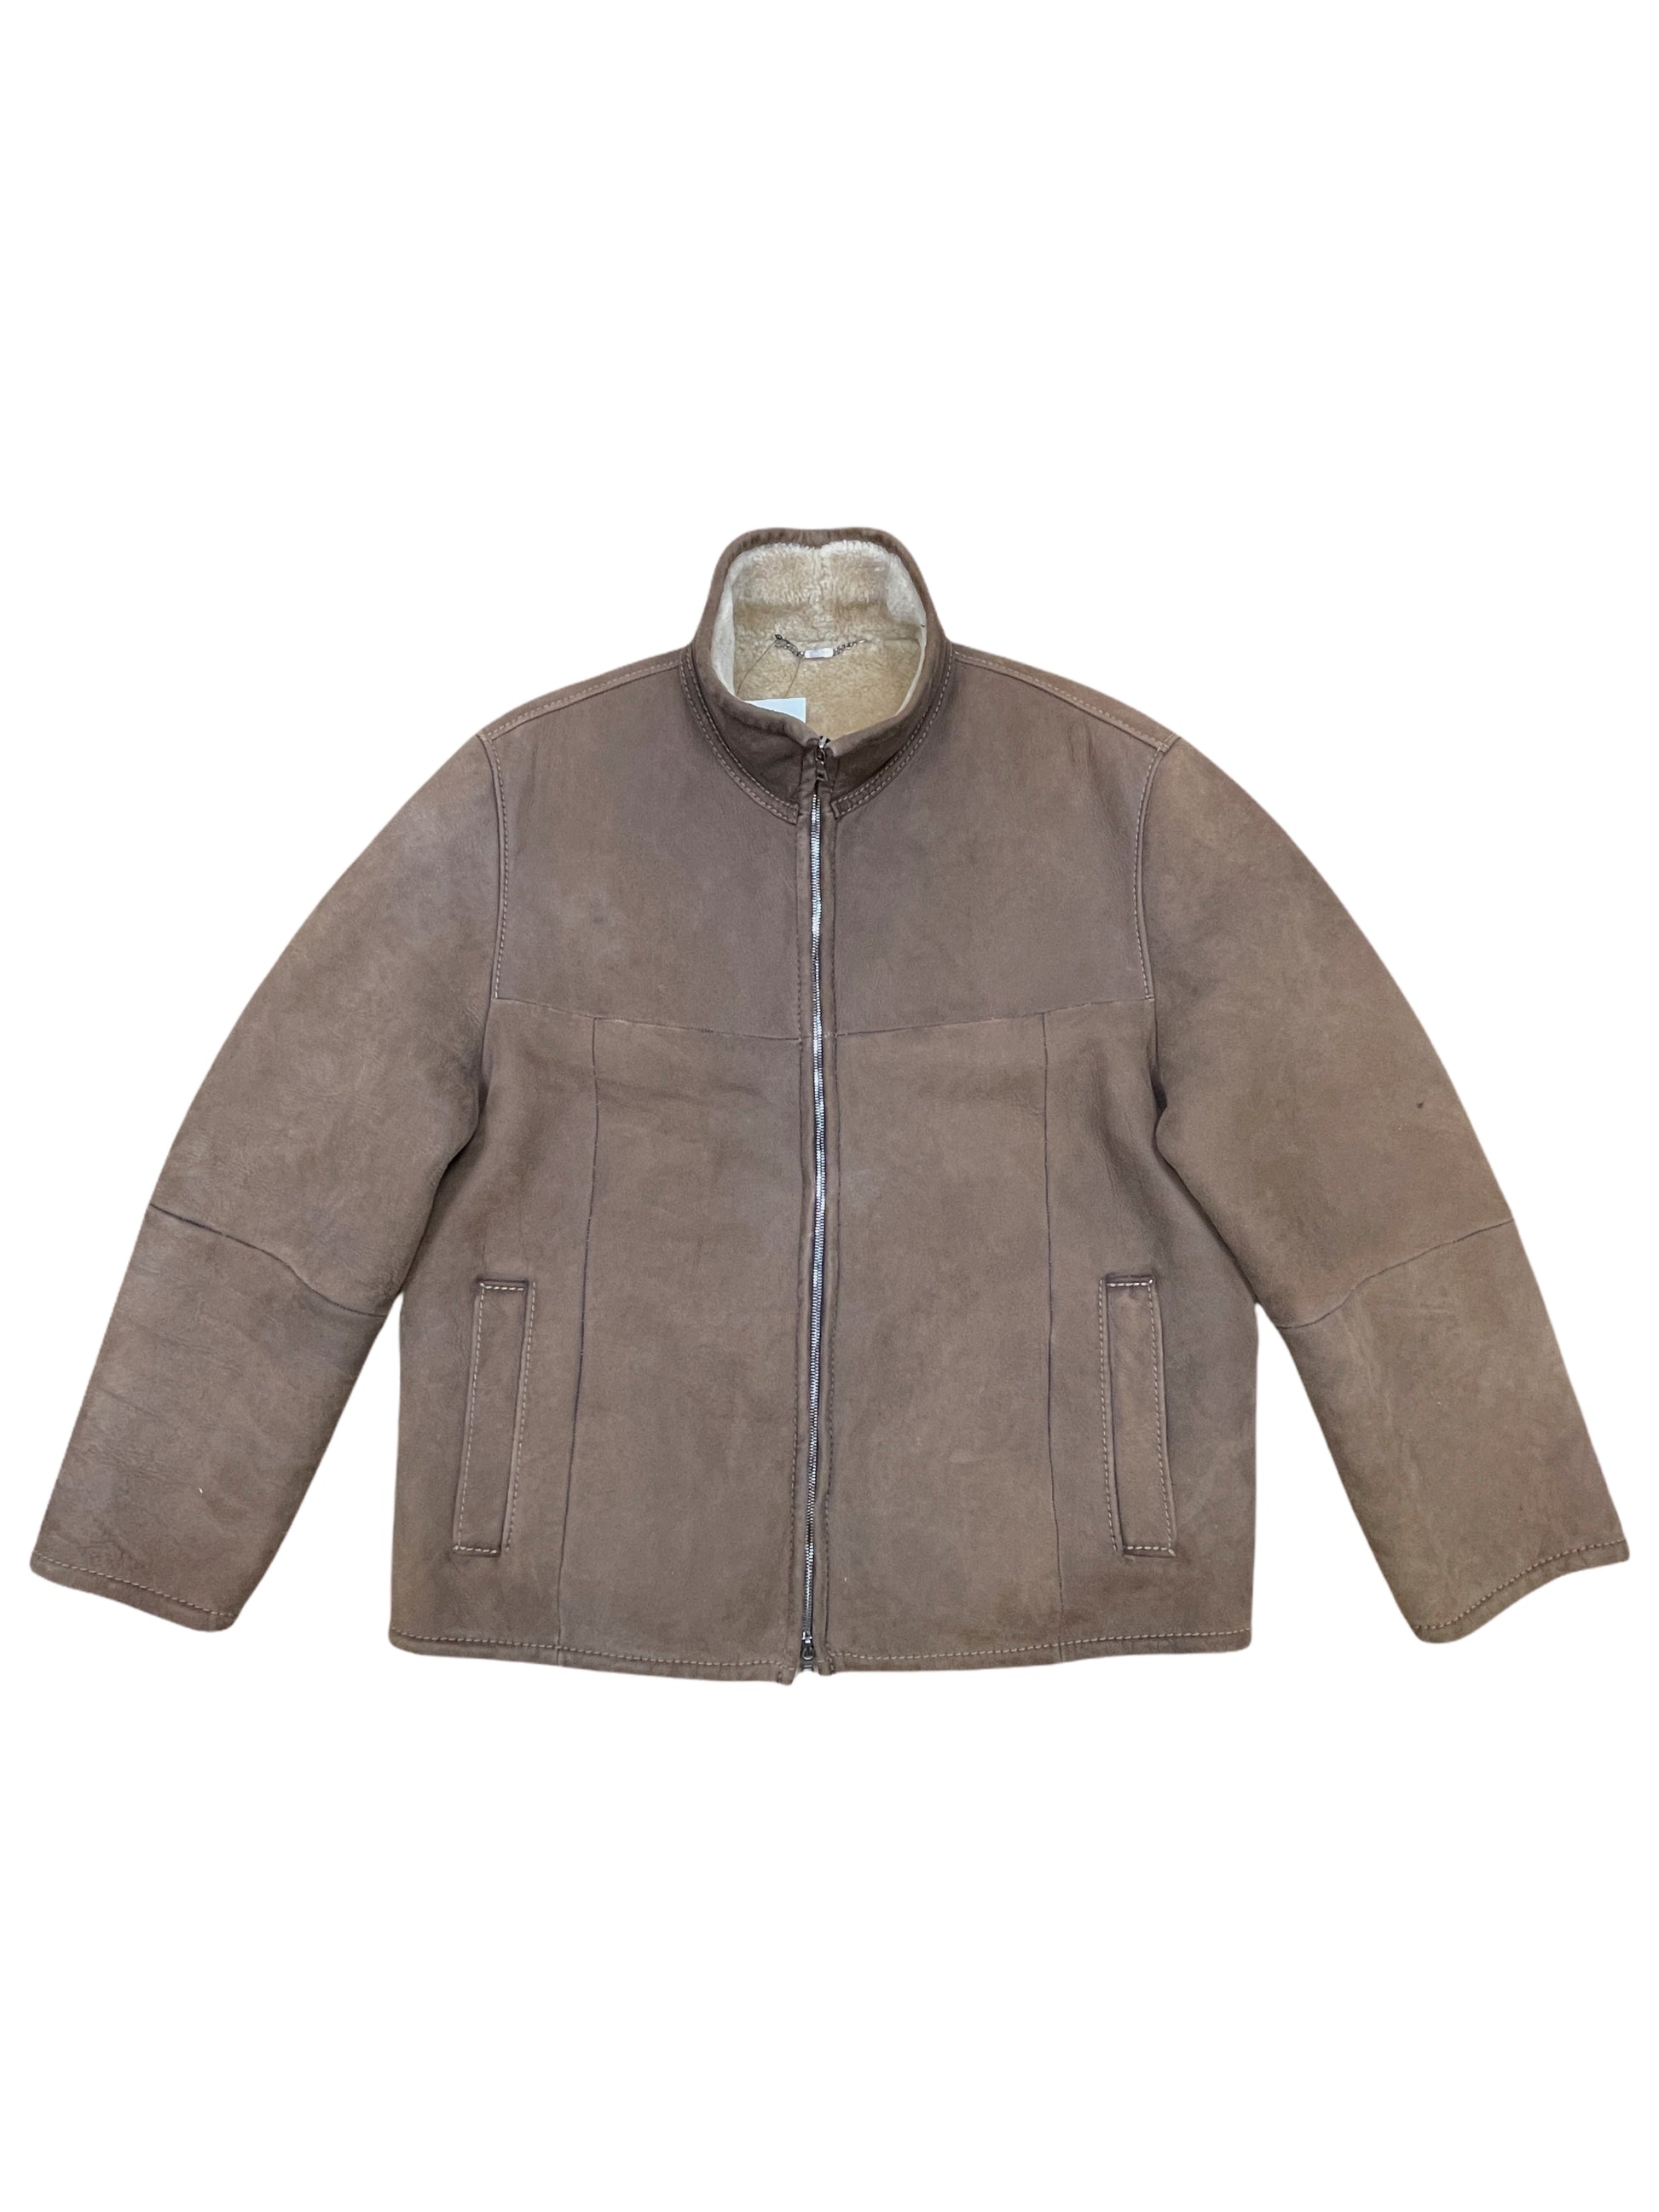 Werner Christ Brown Sheepskin Shearling Leather Bomber Jacket Large - L